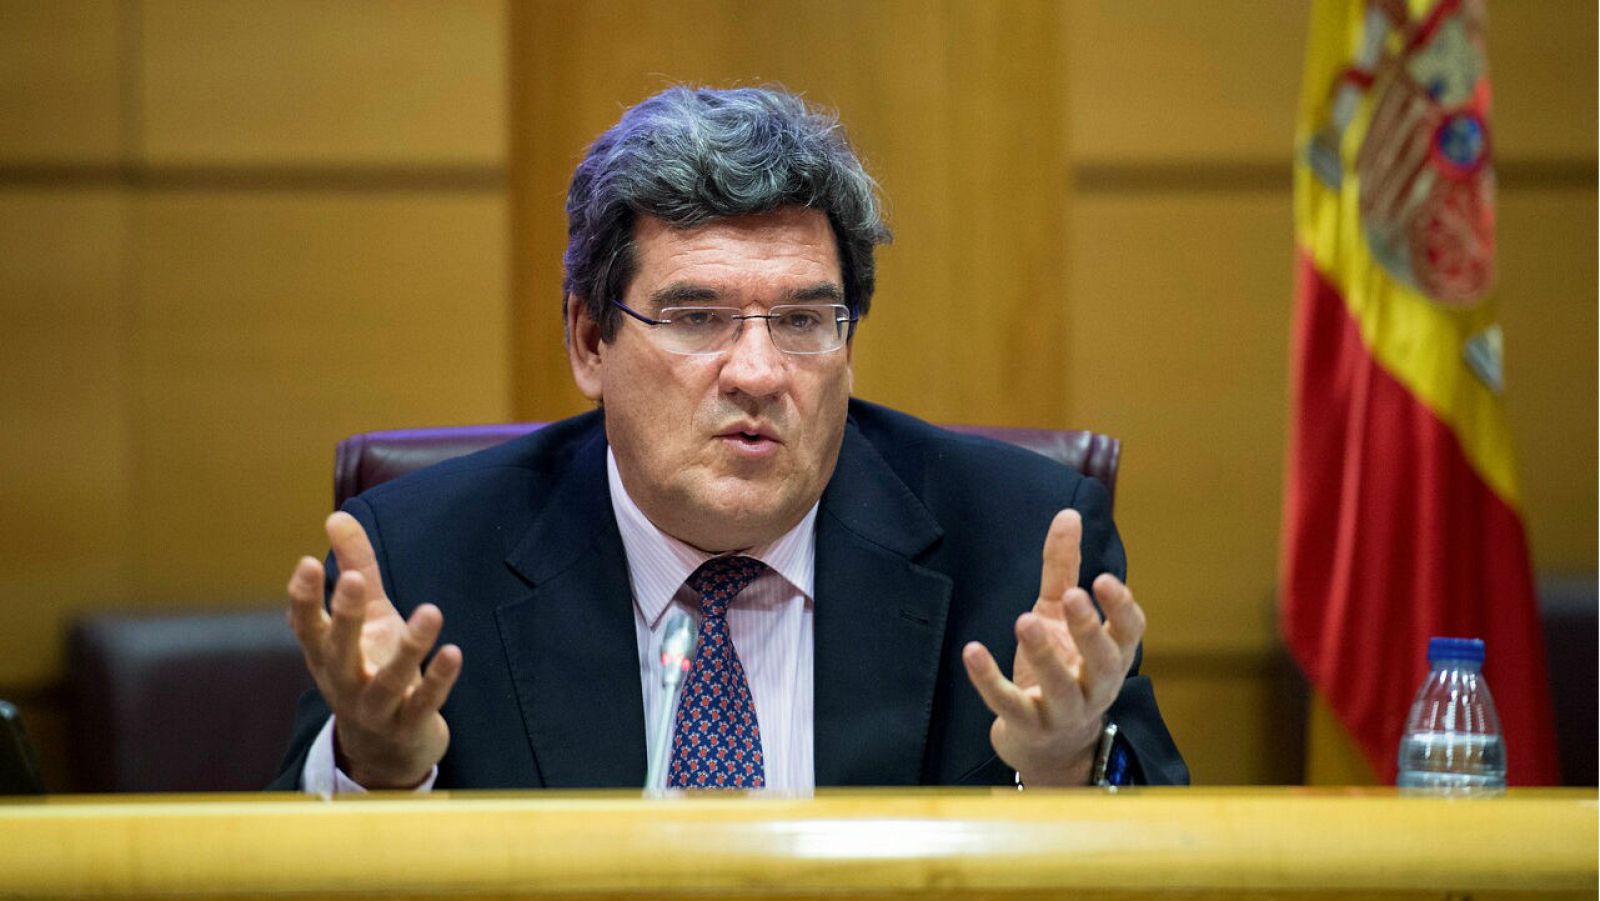 El Ministro de Inclusión, Seguridad Social y Migraciones, José Luis Escrivá, durante su comparecencia ante la Comisión de Trabajo, Inclusión, Seguridad Social y Migraciones del Senado.